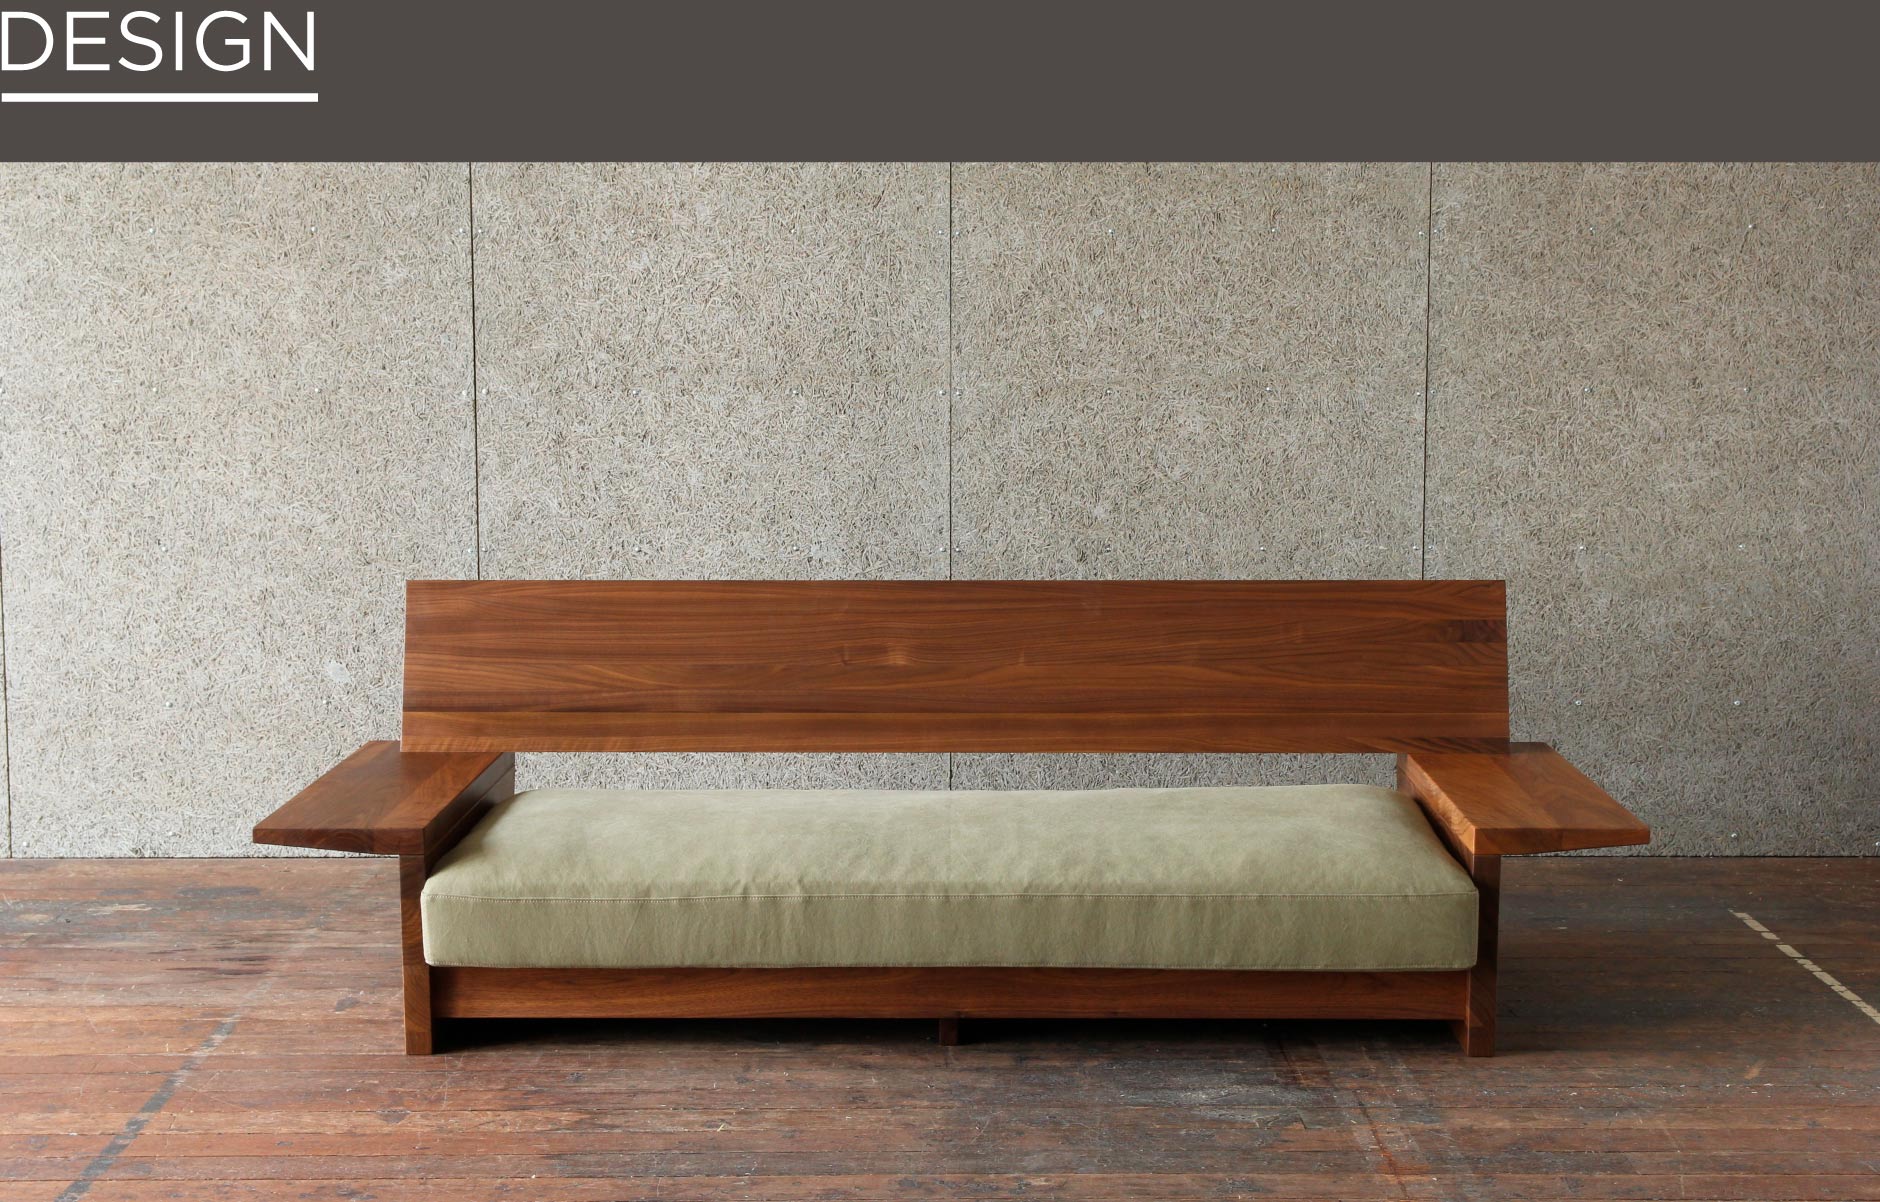 SOLID大阪店の家具の中でも無垢材を贅沢に使用した存在感。厚みのあるクッションは掛け心地も抜群の木製ソファです。